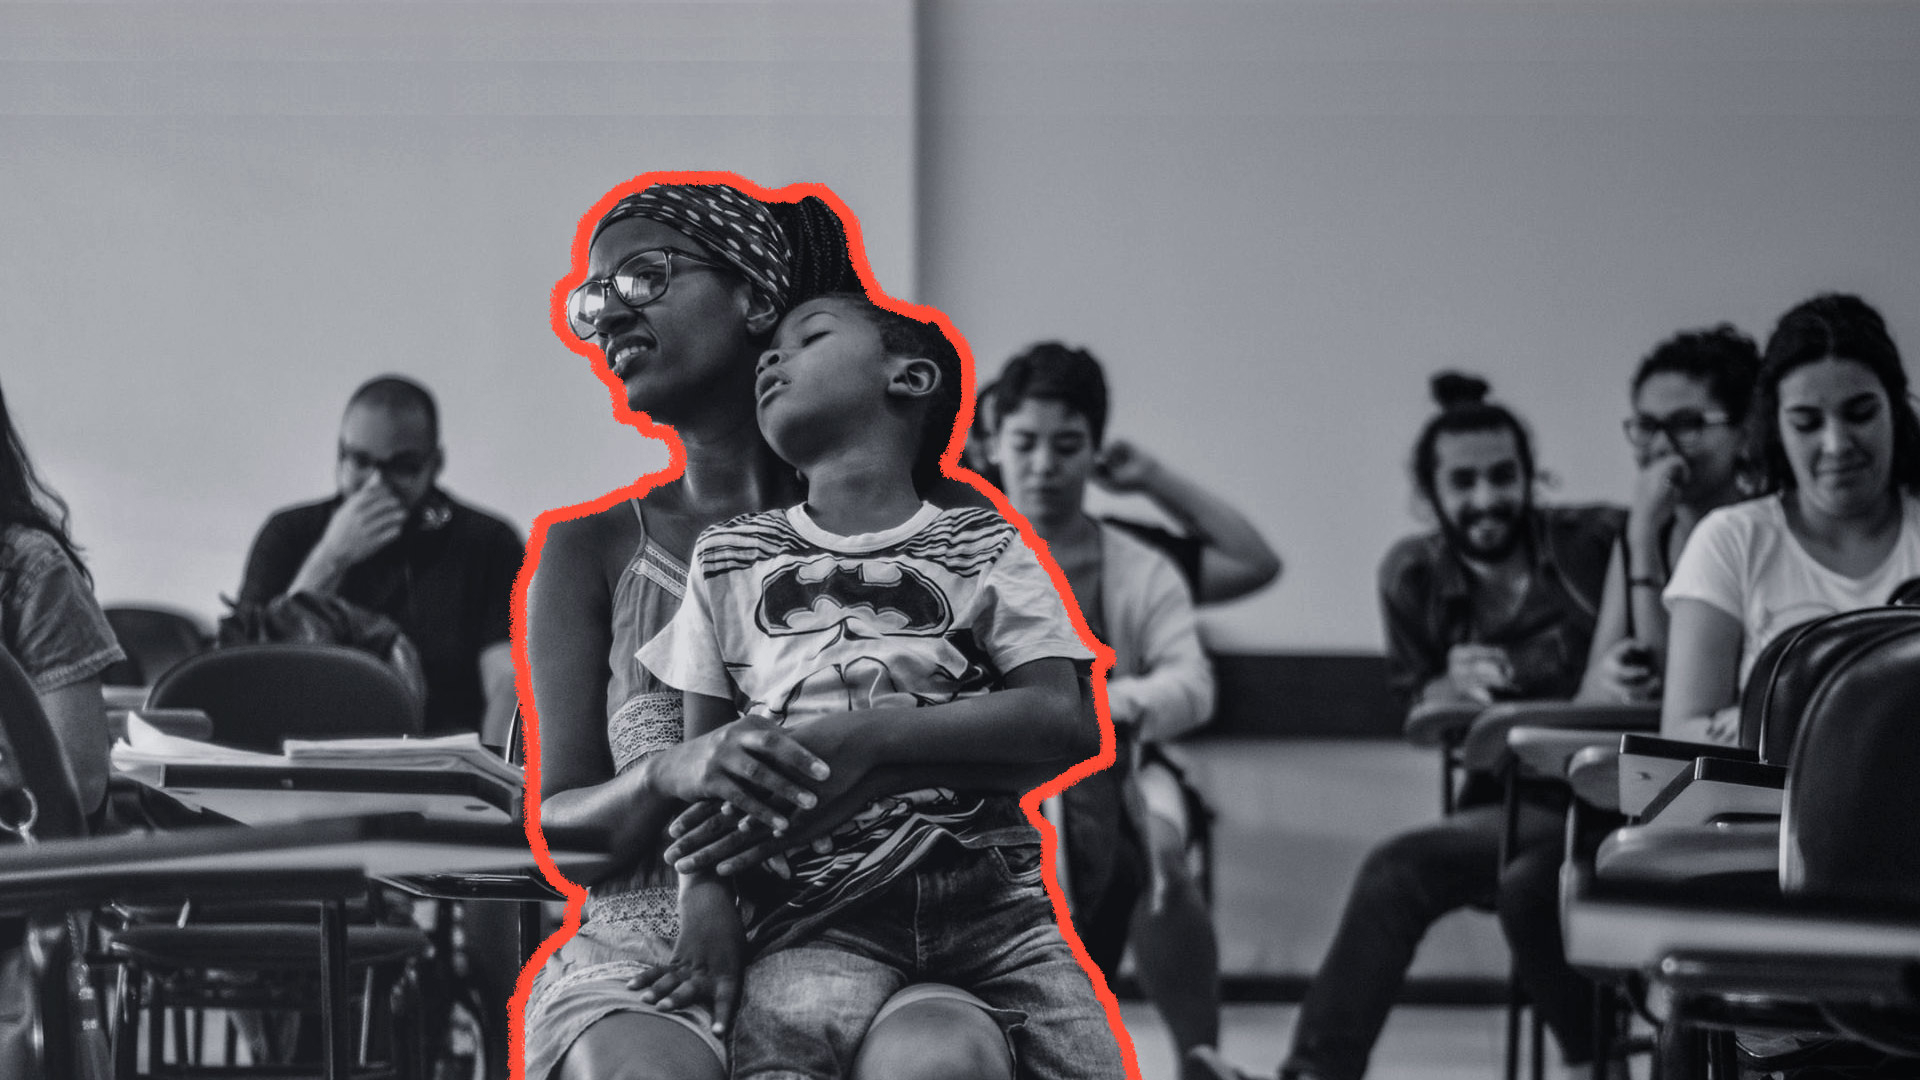 Mães na universidade: Imagem em preto e branco mostra uma mãe, em uma sala de aula, segurando seu filho no colo.